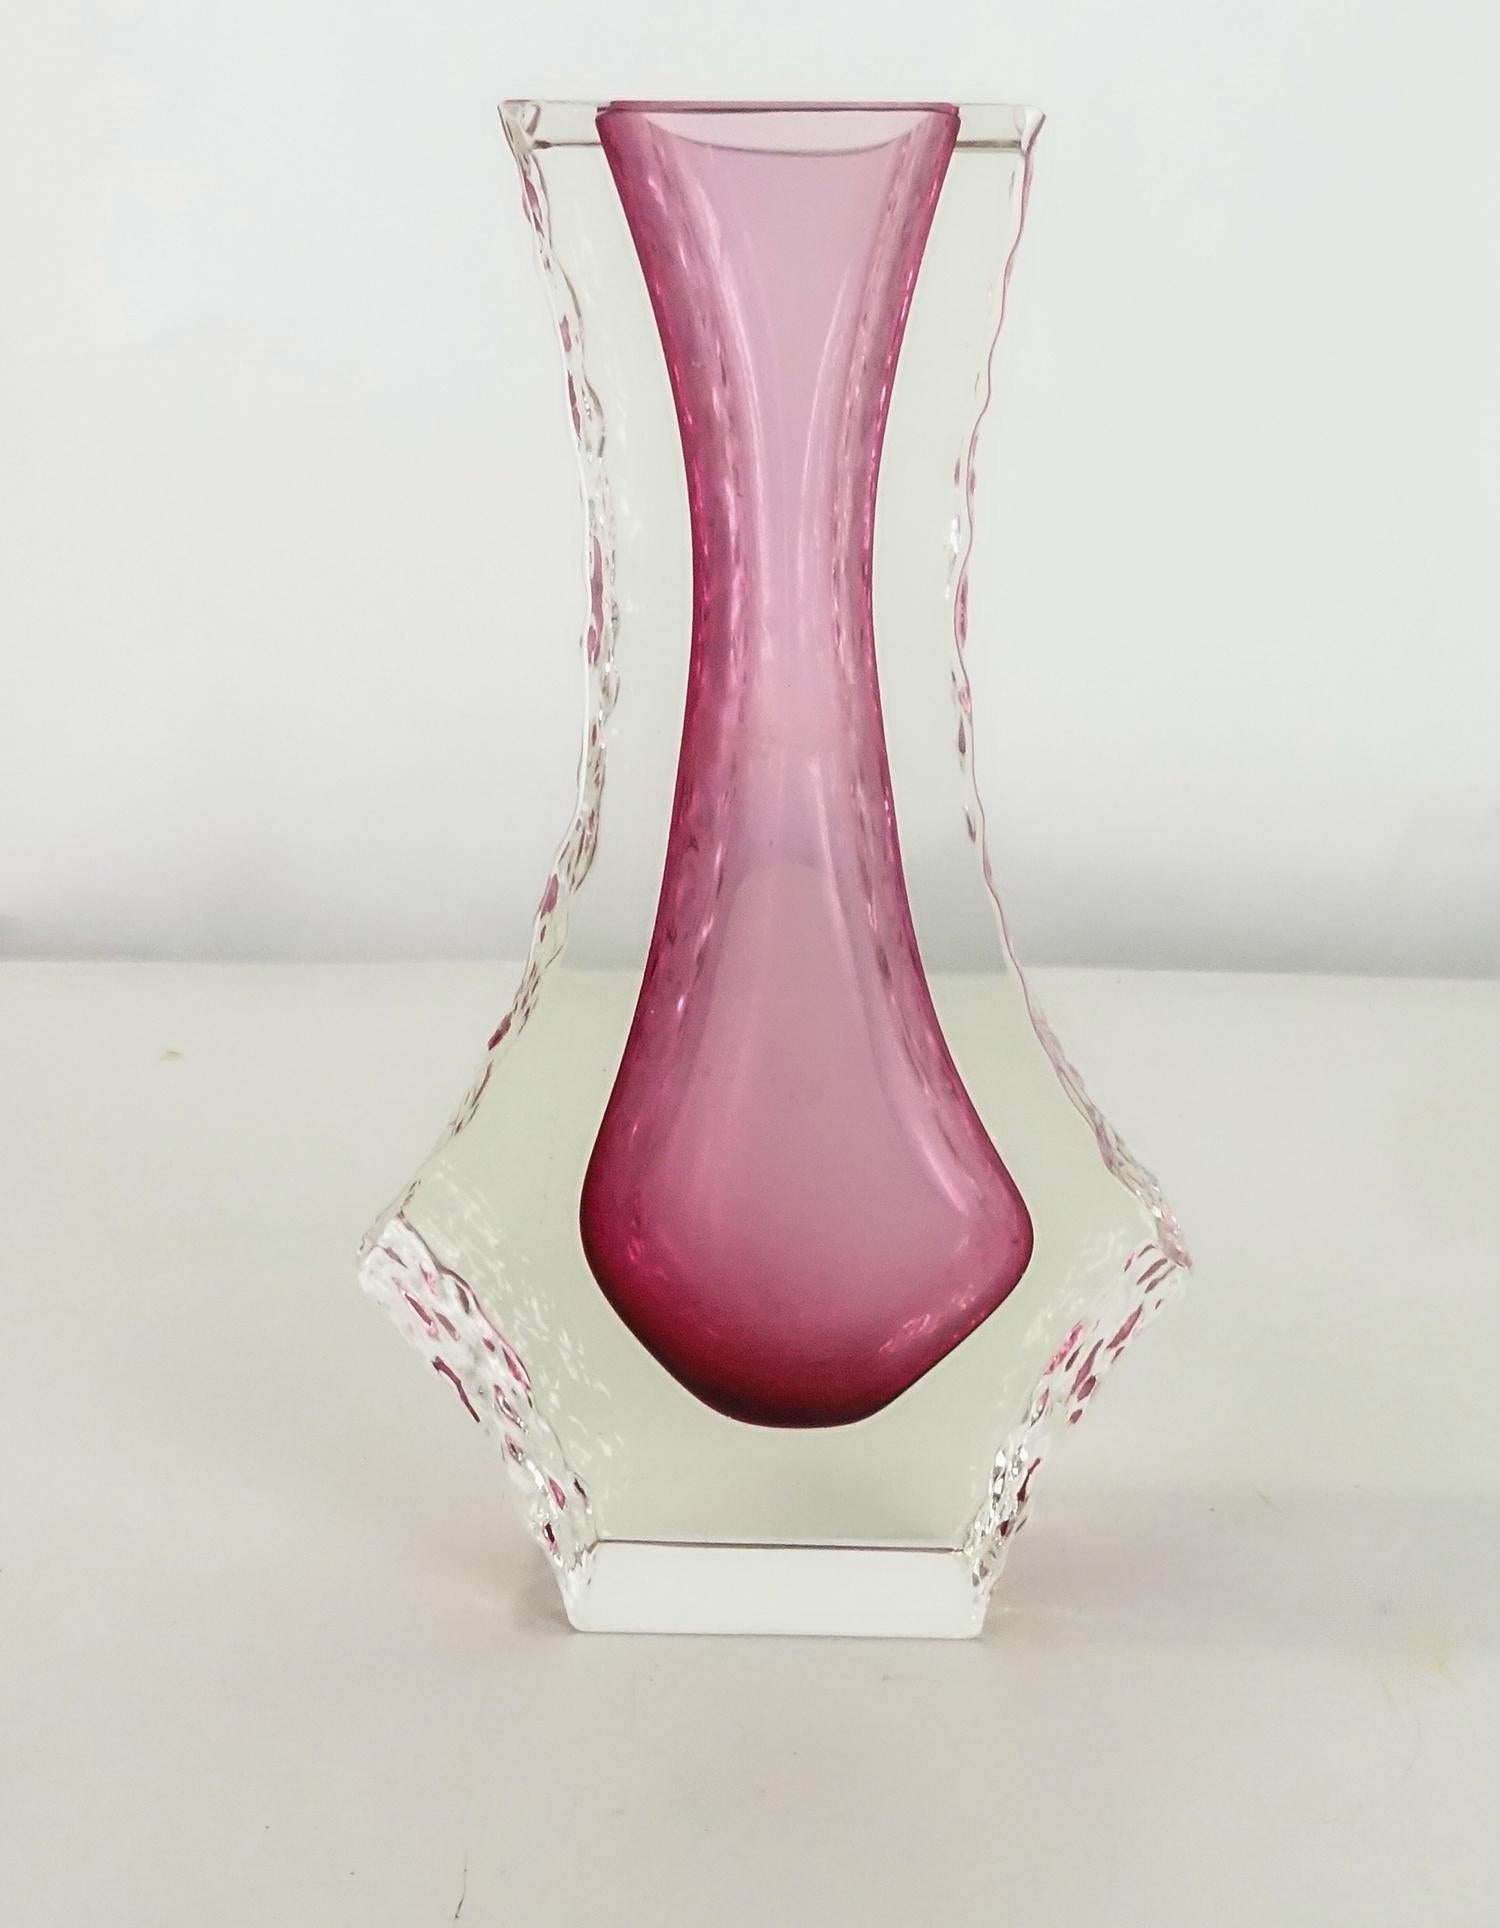 Vase aus facettiertem Murano-Kunstglas aus der Jahrhundertmitte mit strukturiertem Eisglasrand. Zuschreibung an Mandruzzato, Italien, 1960er Jahre.
Diese strukturierten Vasen sind schwer zu finden.
Die Farbe ist nicht einheitlich, an manchen Stellen